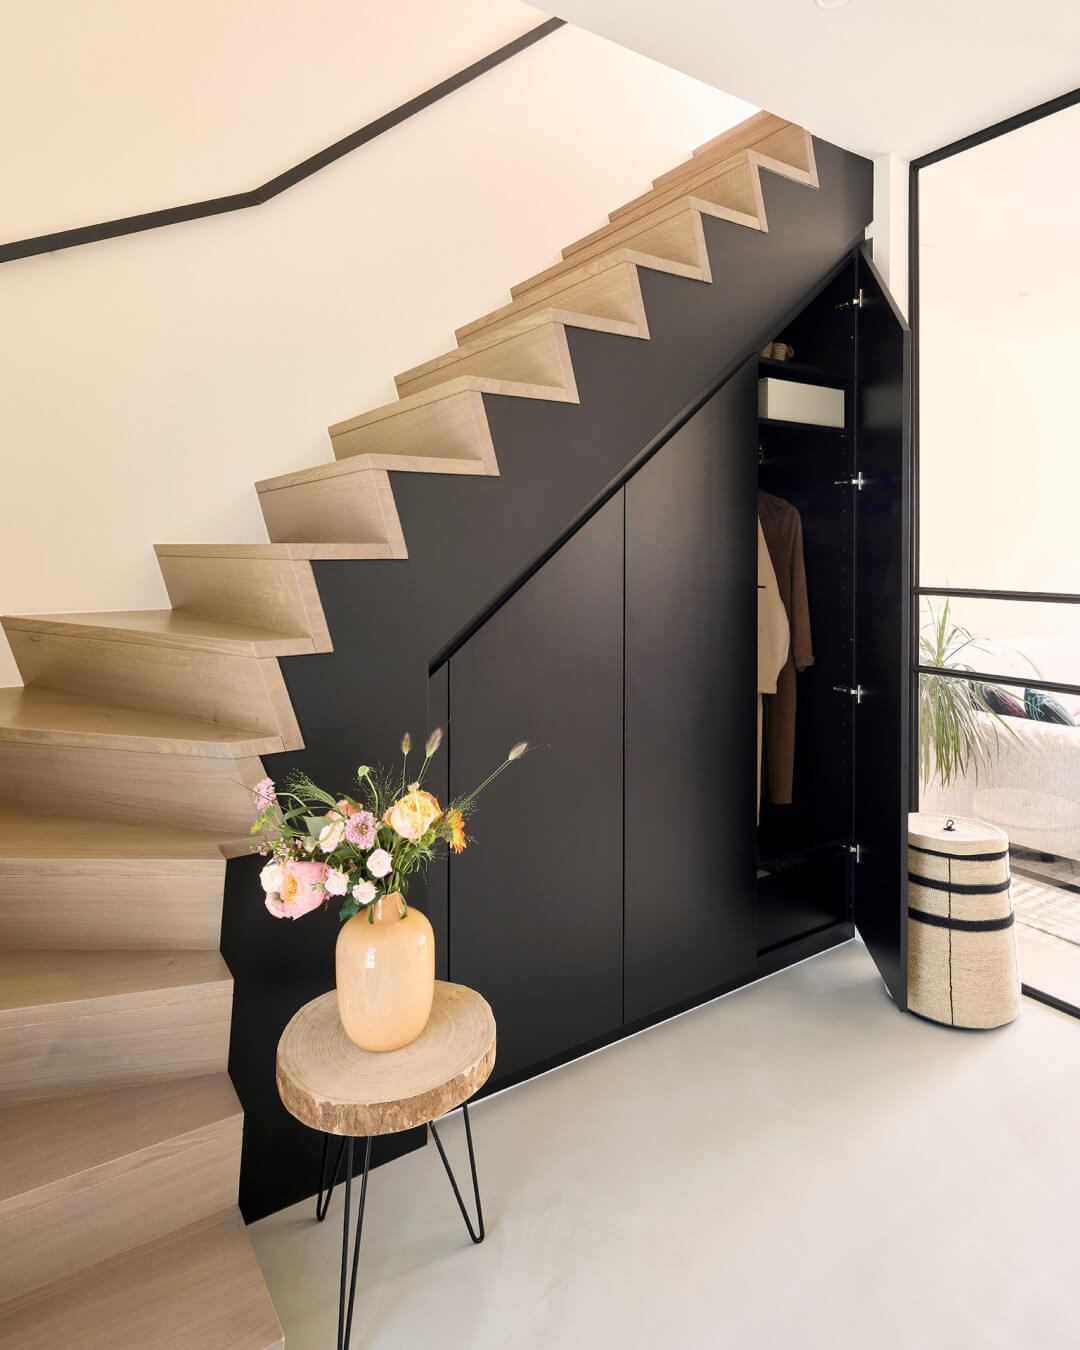 Custom under-stair closet in Diamond Black by Maatkasten Online